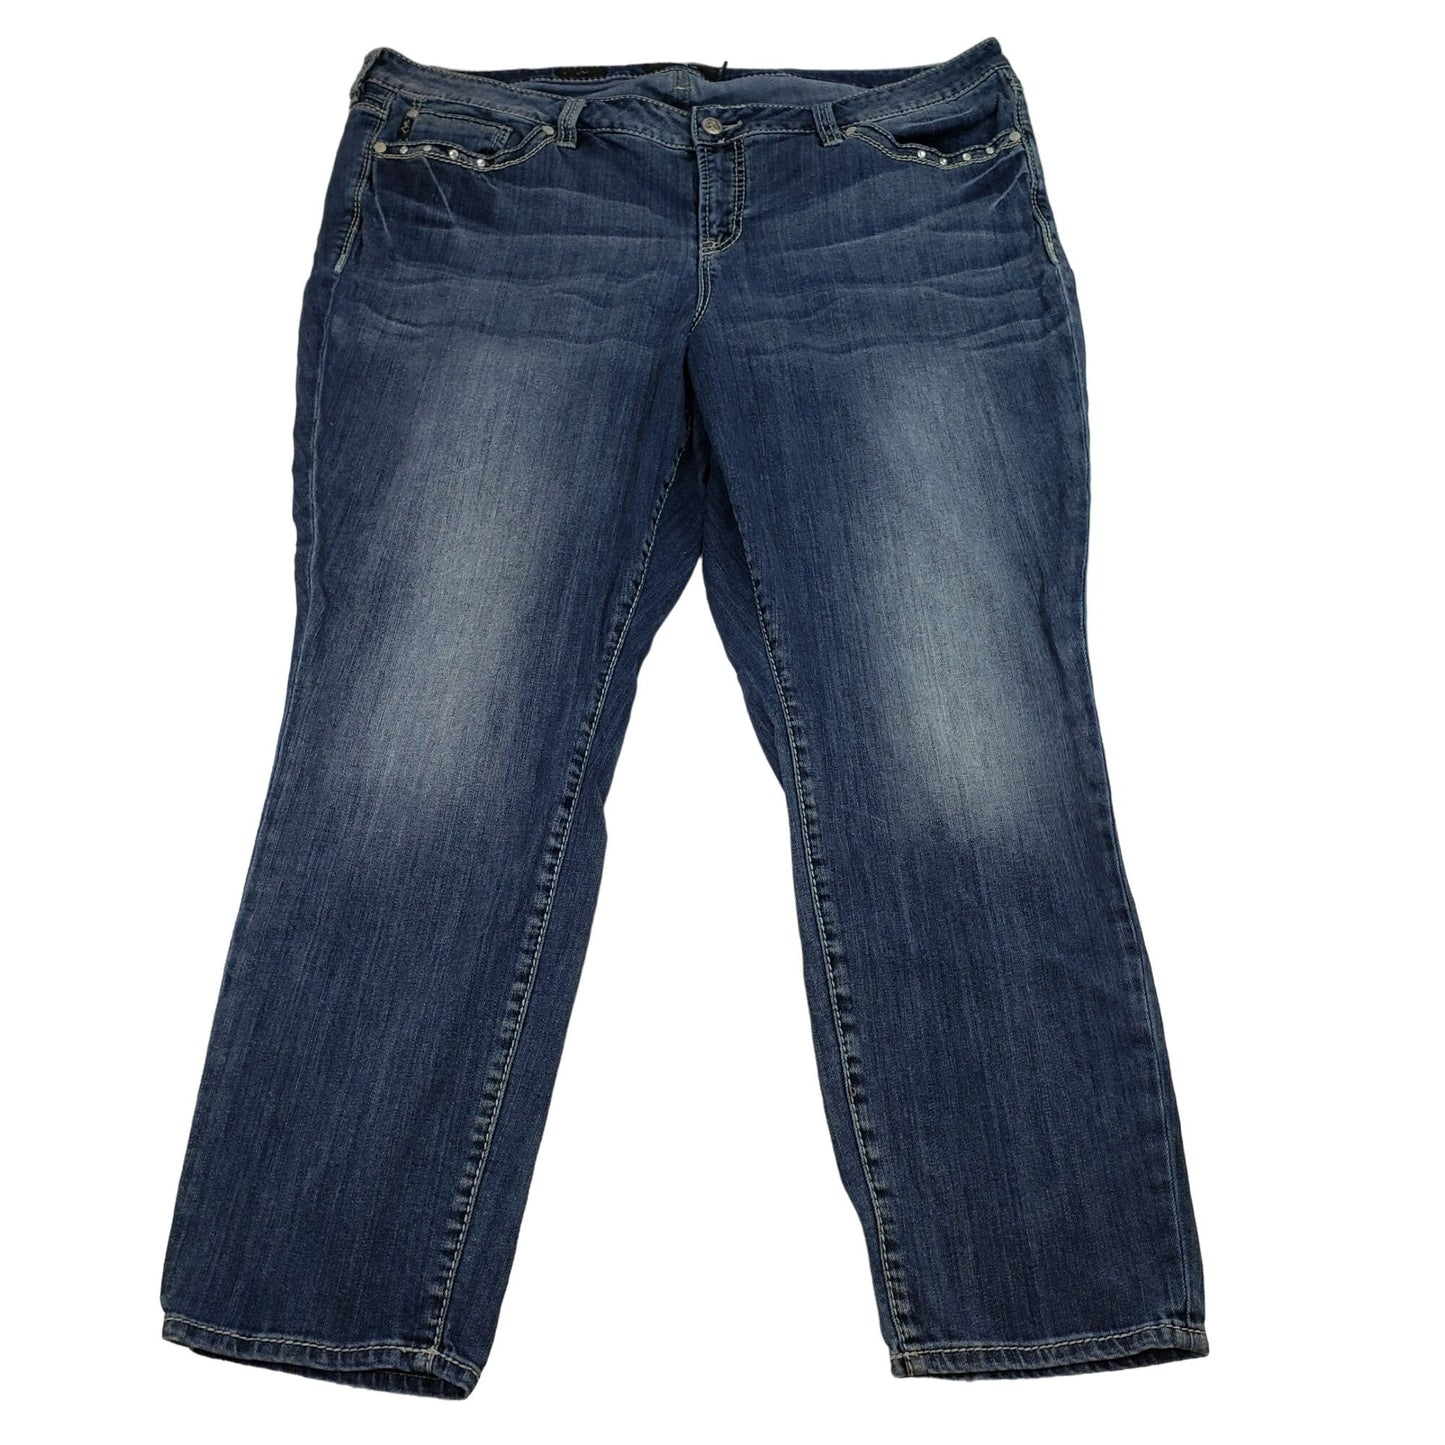 Torrid Premium Embellished Skinny Jeans Size 24